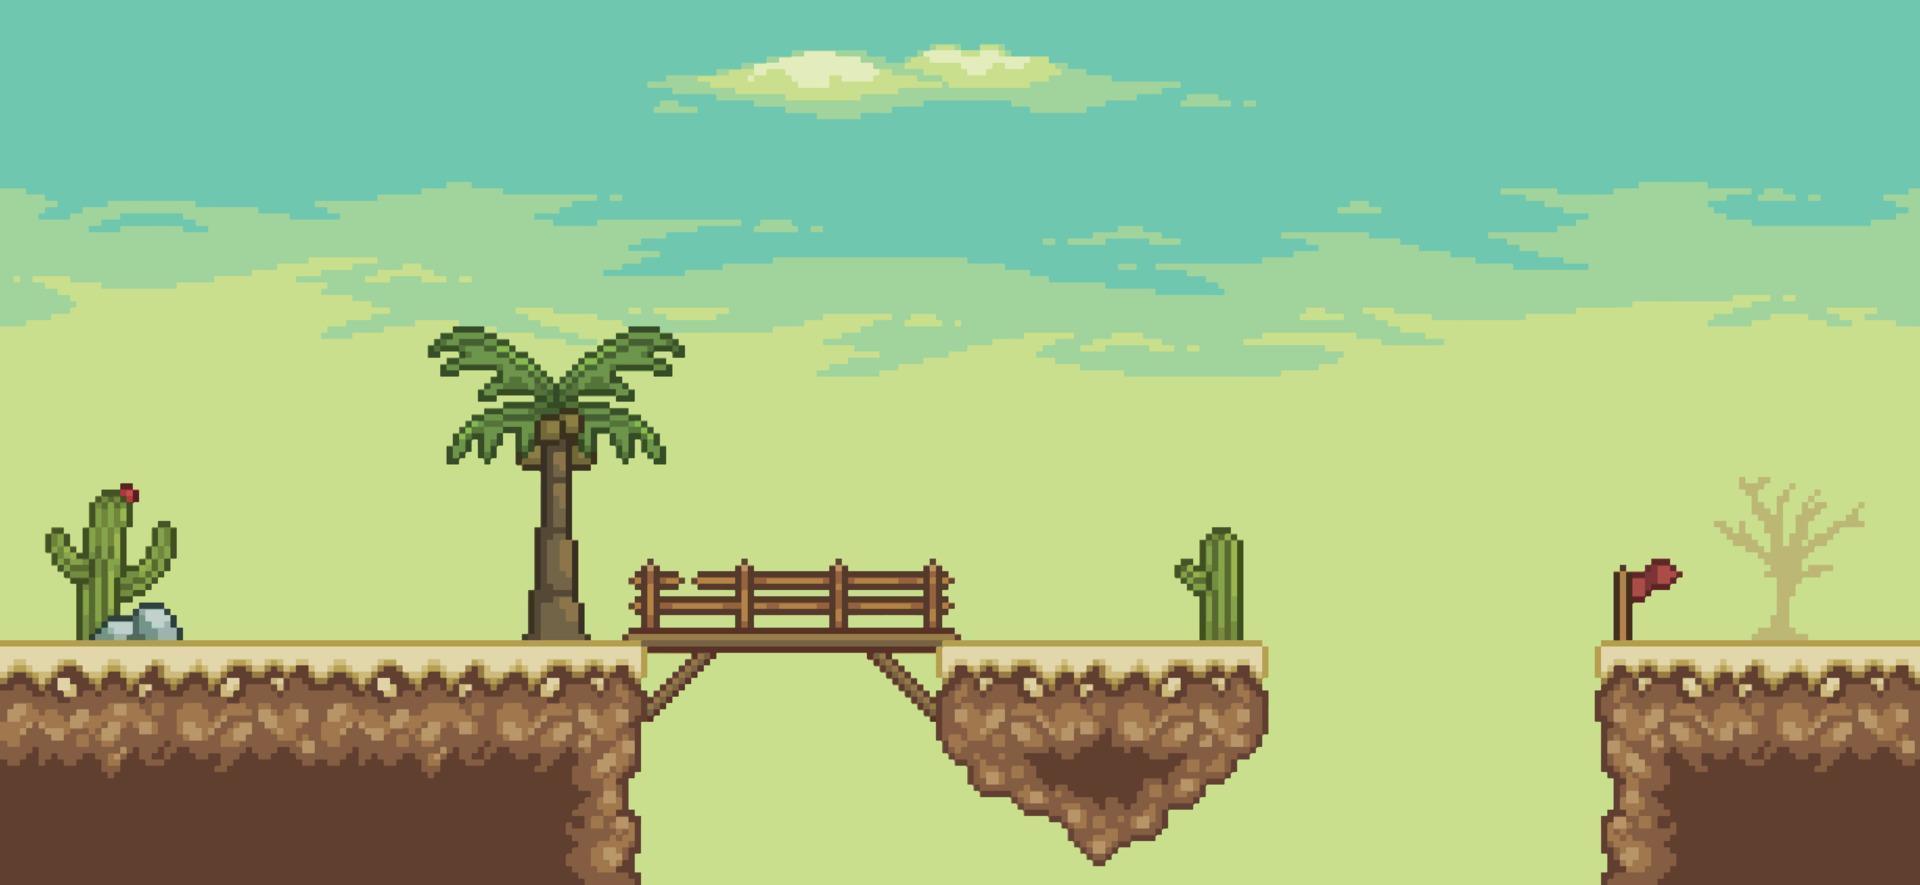 Pixelkunst-Wüstenspielszene mit Pyramide, Brücke, Palme, Kakteen, 8-Bit-Hintergrund vektor